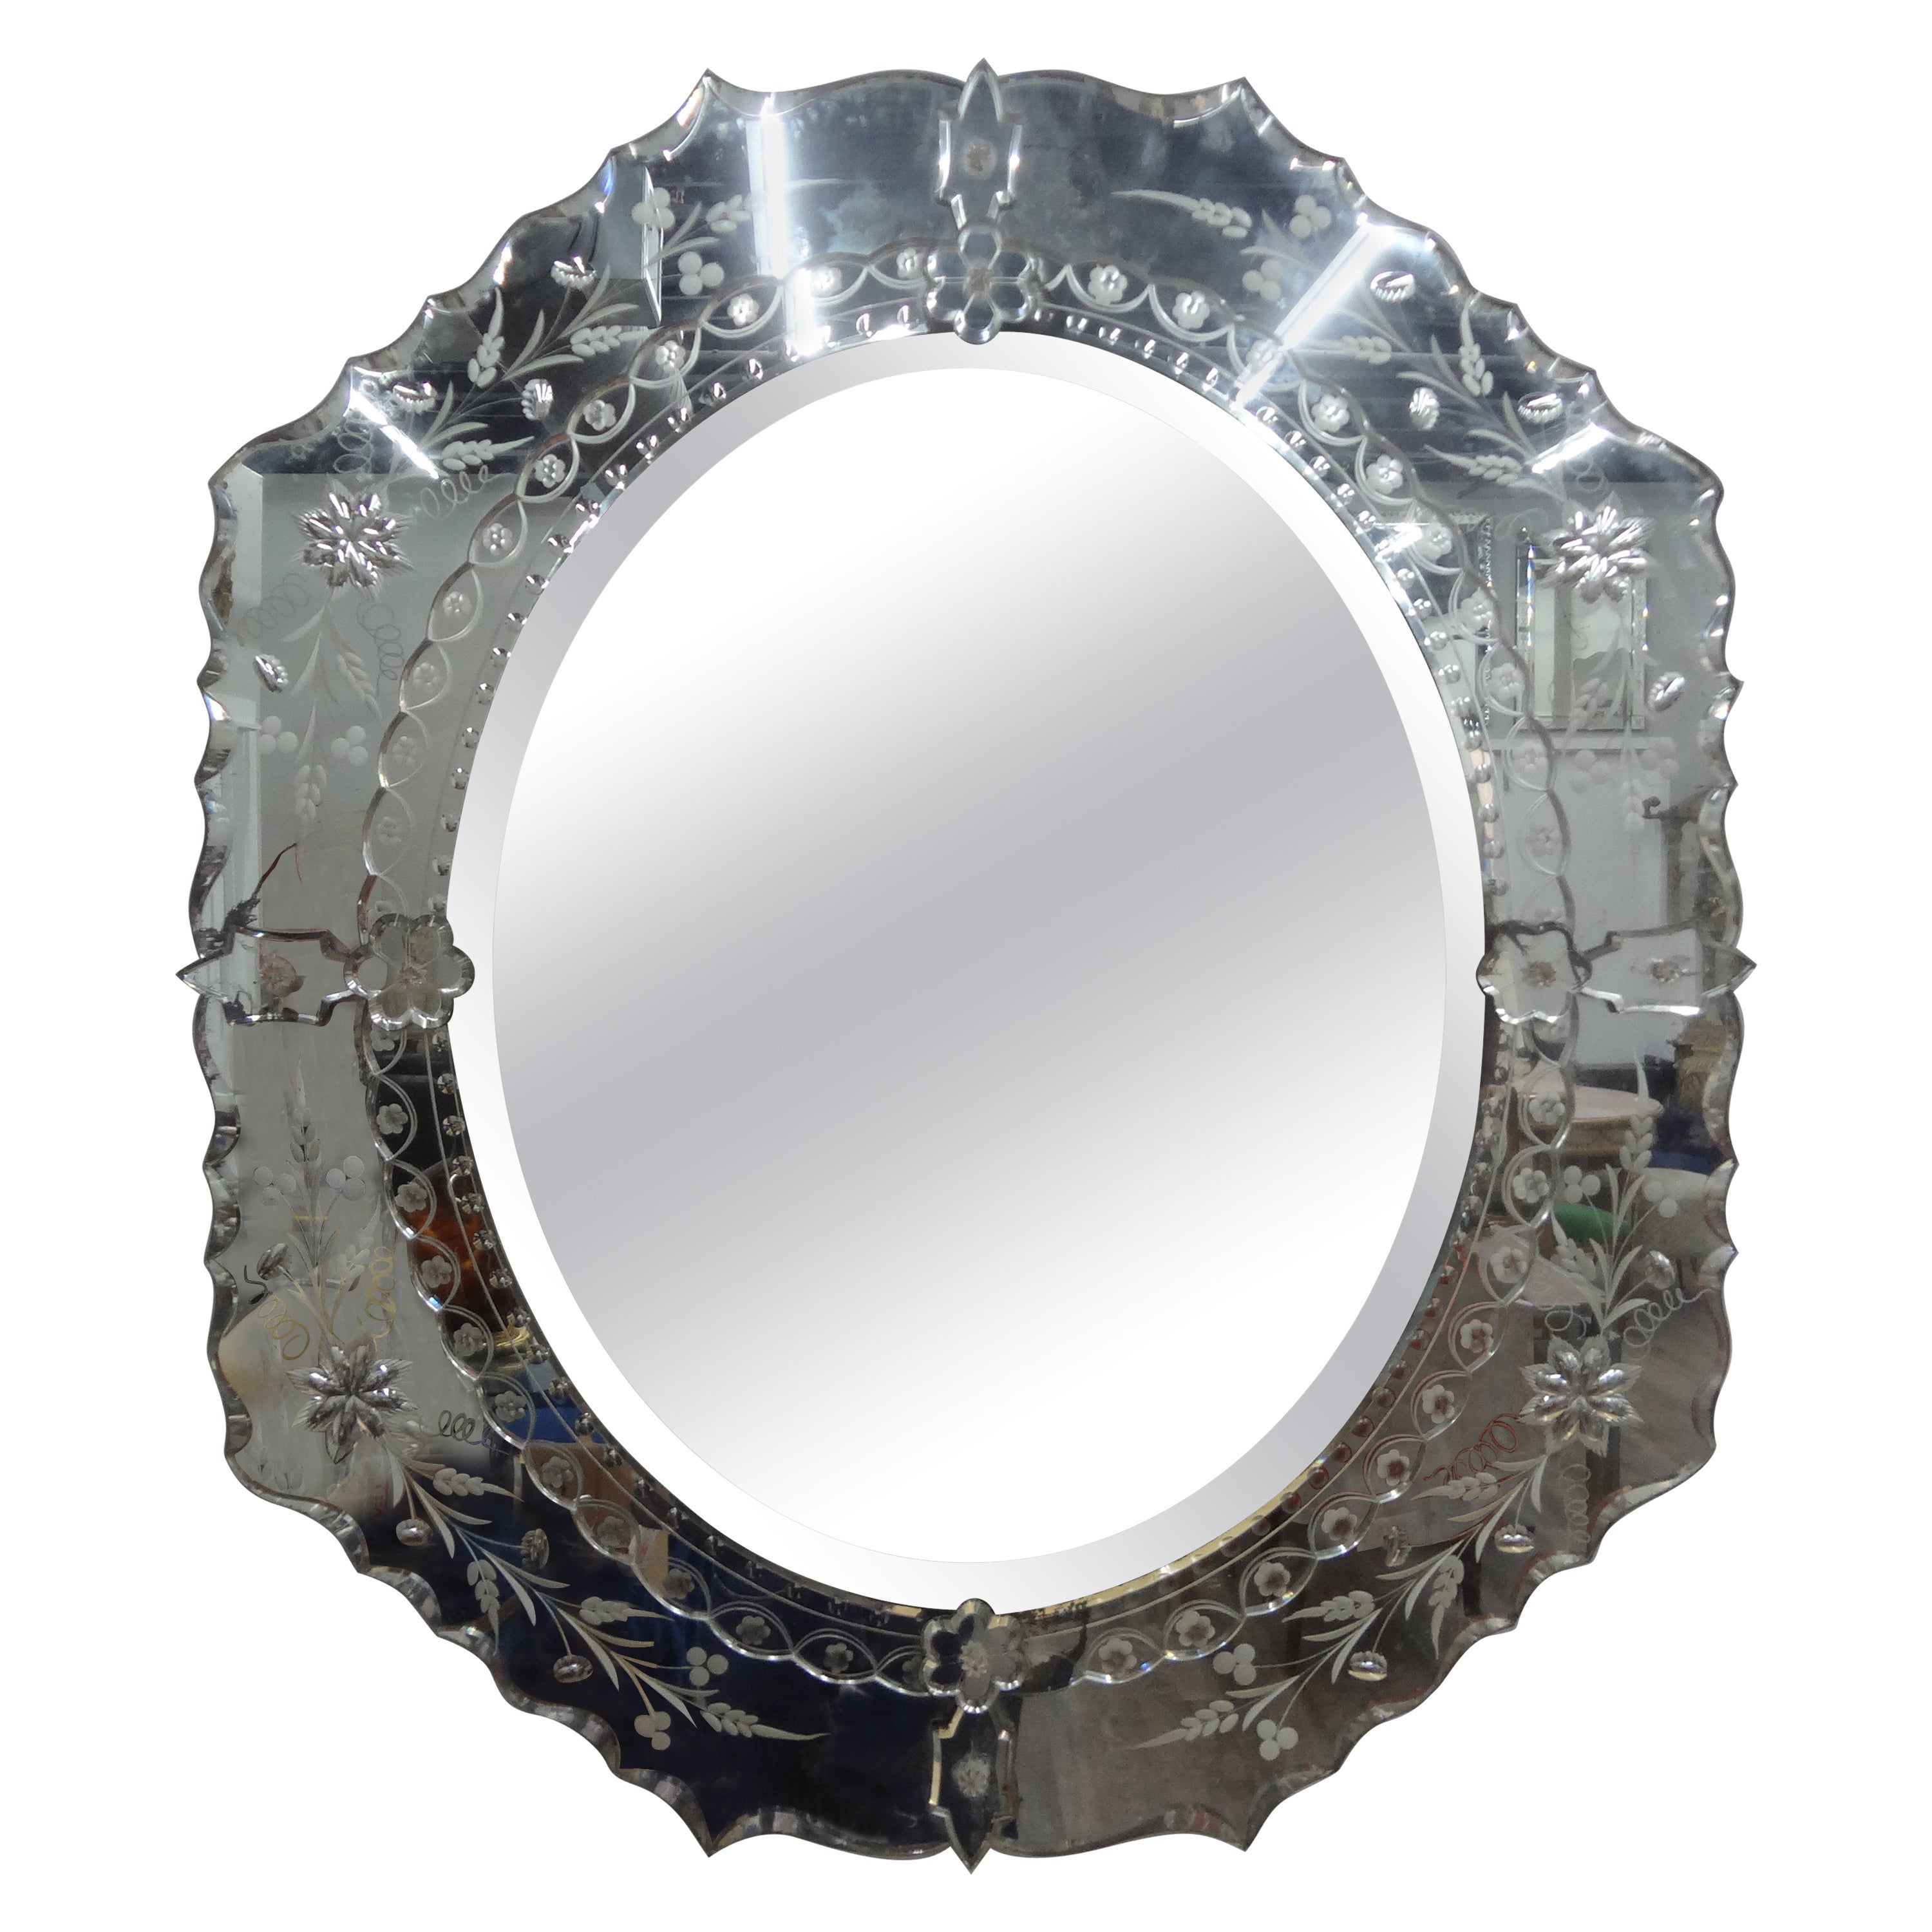 Abgeschrägter und geätzter venezianischer Spiegel